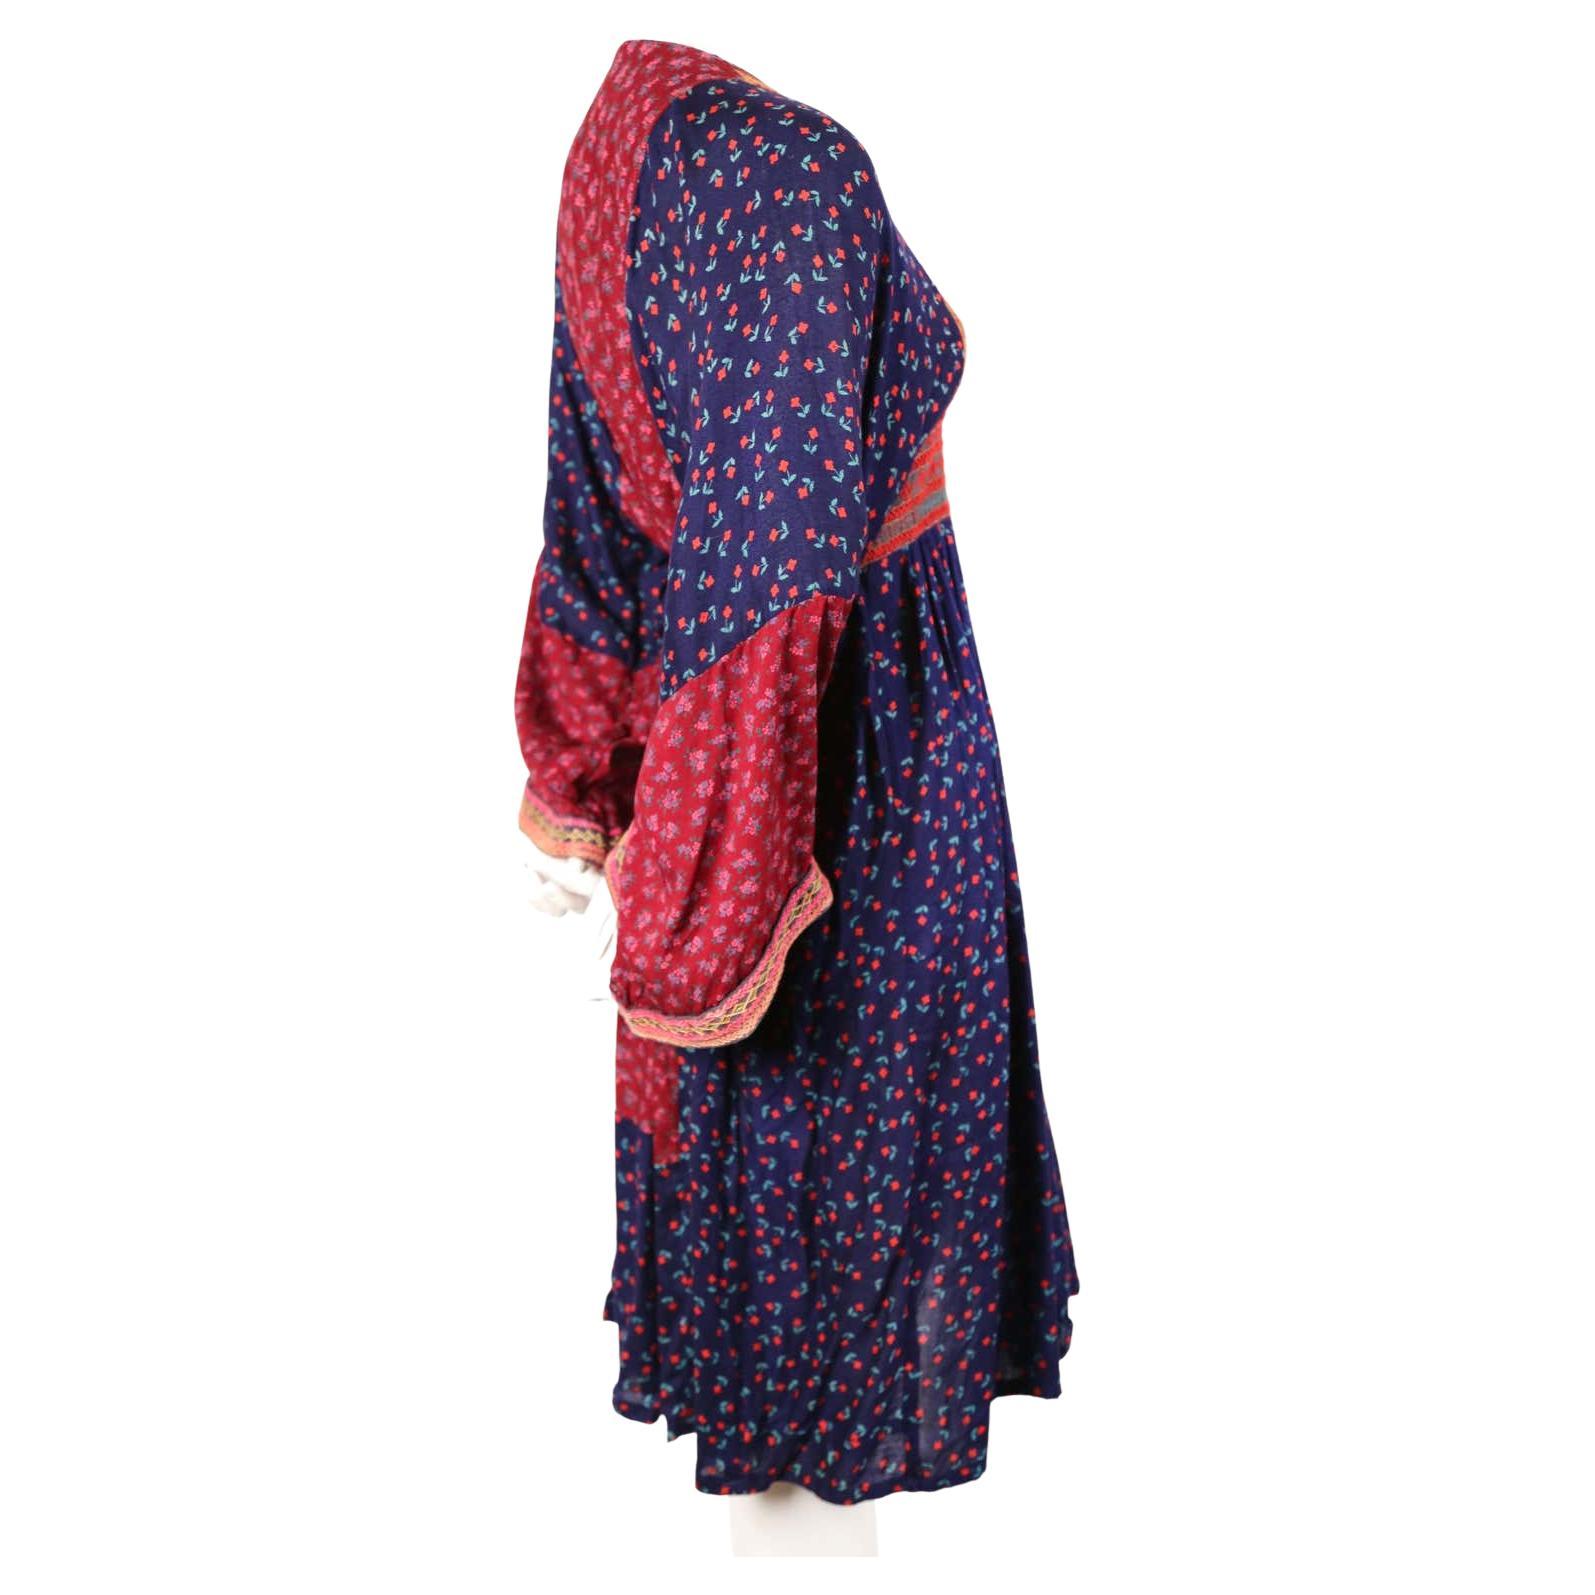 vintage afghan dress